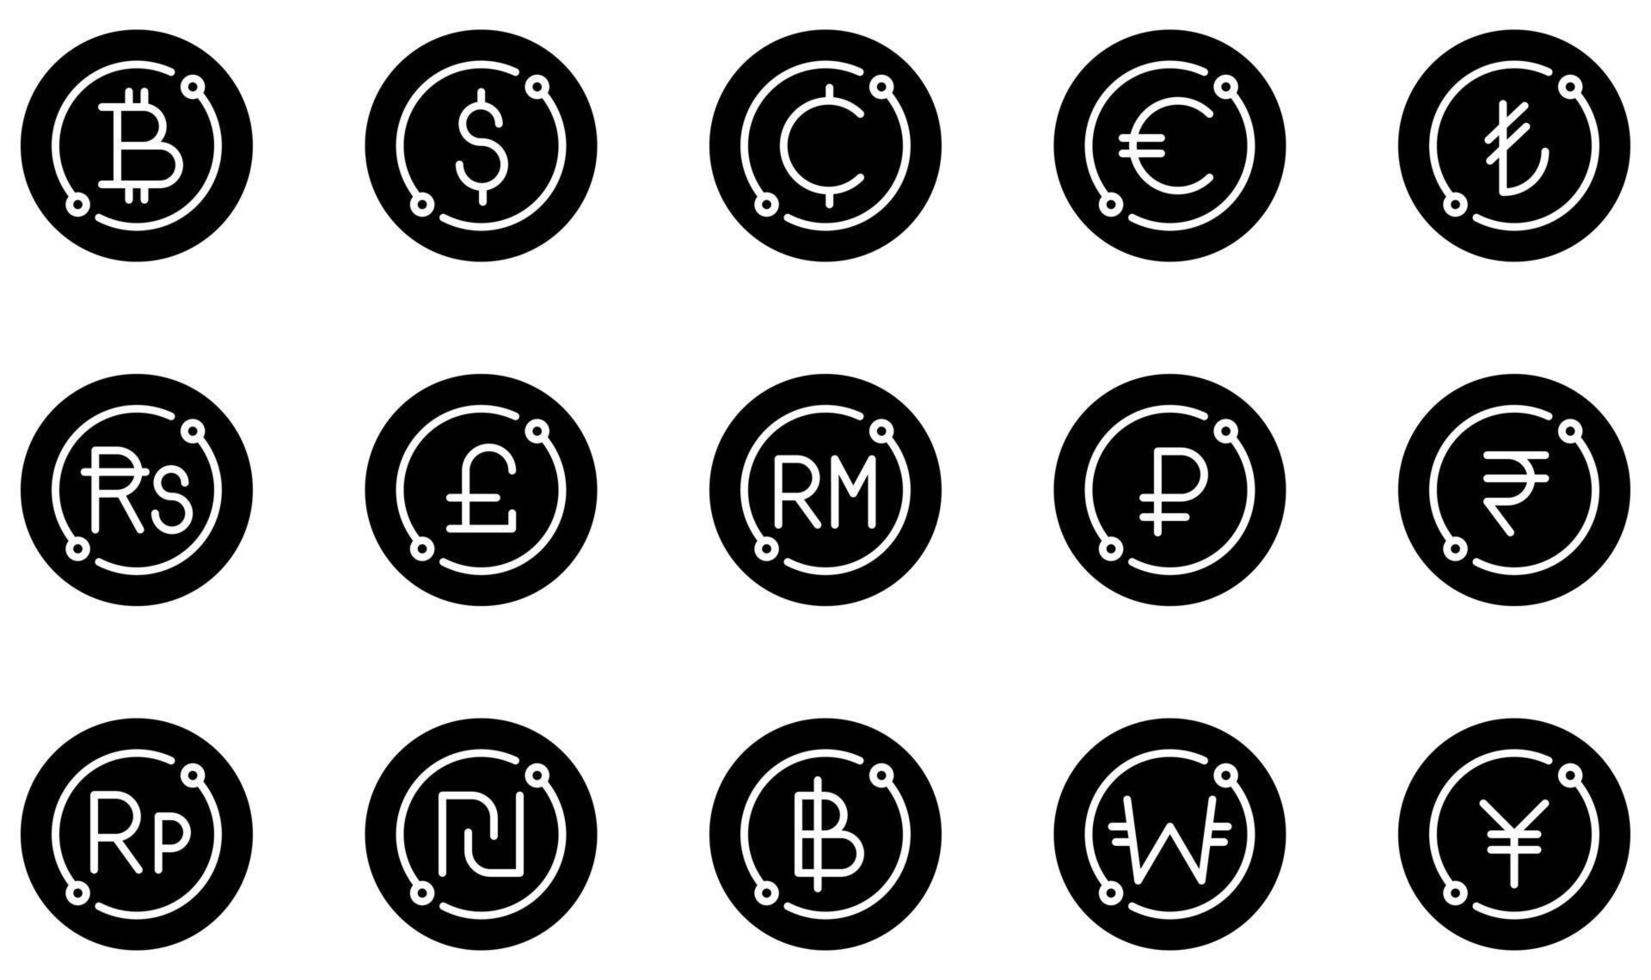 set di icone vettoriali relative alla valuta. contiene icone come bitcoin, dollaro, centesimi, euro, sterlina, baht e altro ancora.